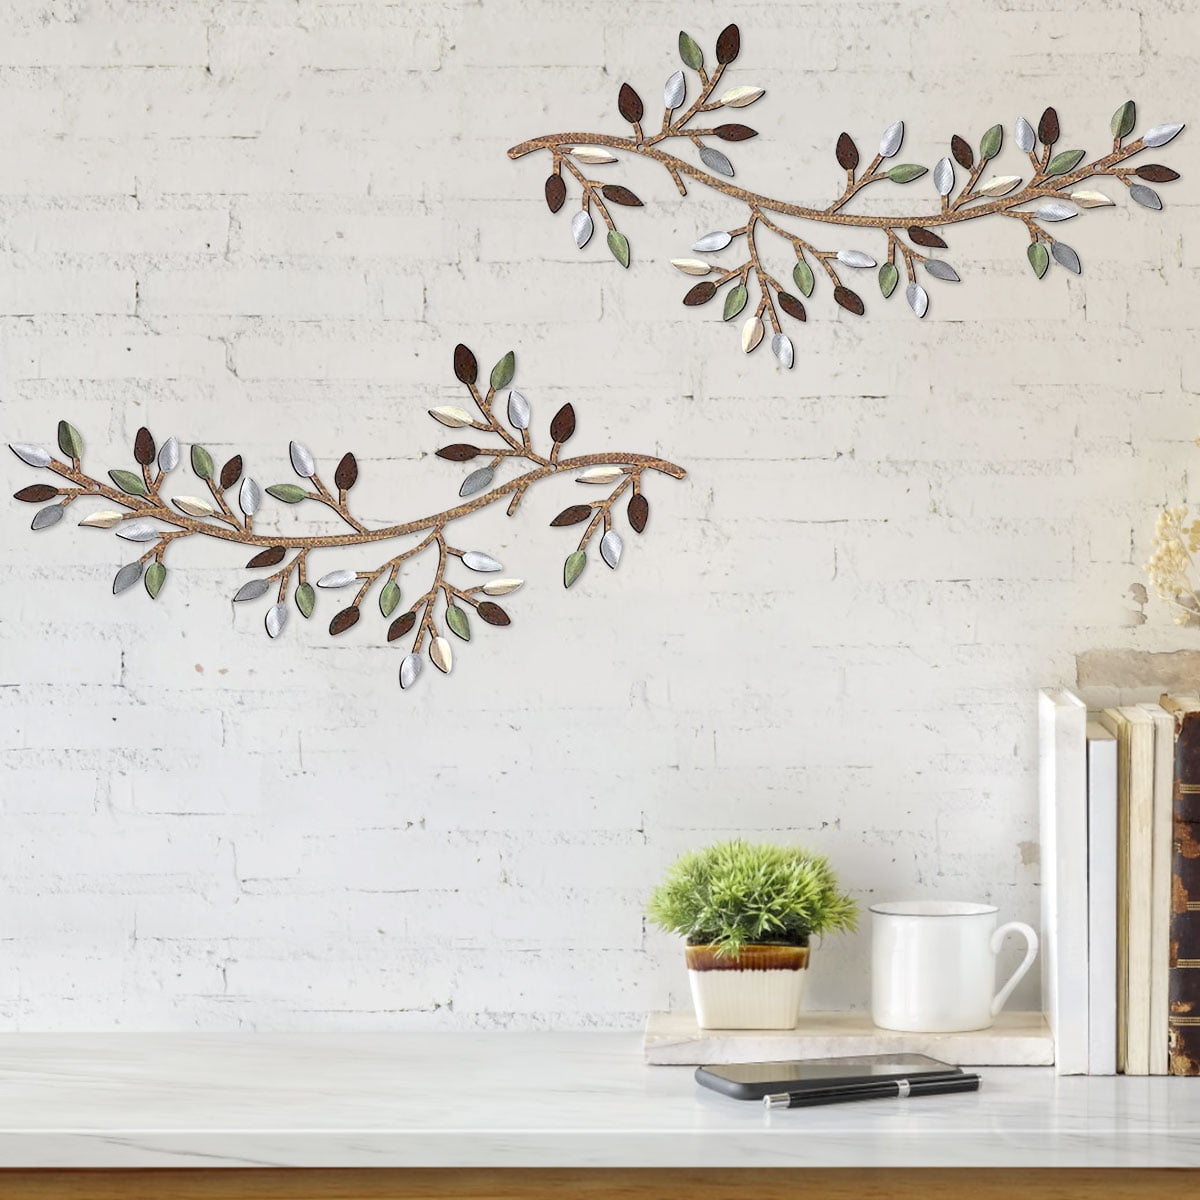 3D Ginkgo Tree Leaf Metal Wall Art, Modern Luxury Metal Wall Nature Art  Decor, Metal Wall-Mounted Sculpture, Hanging for Living Room Bedroom  Kitchen